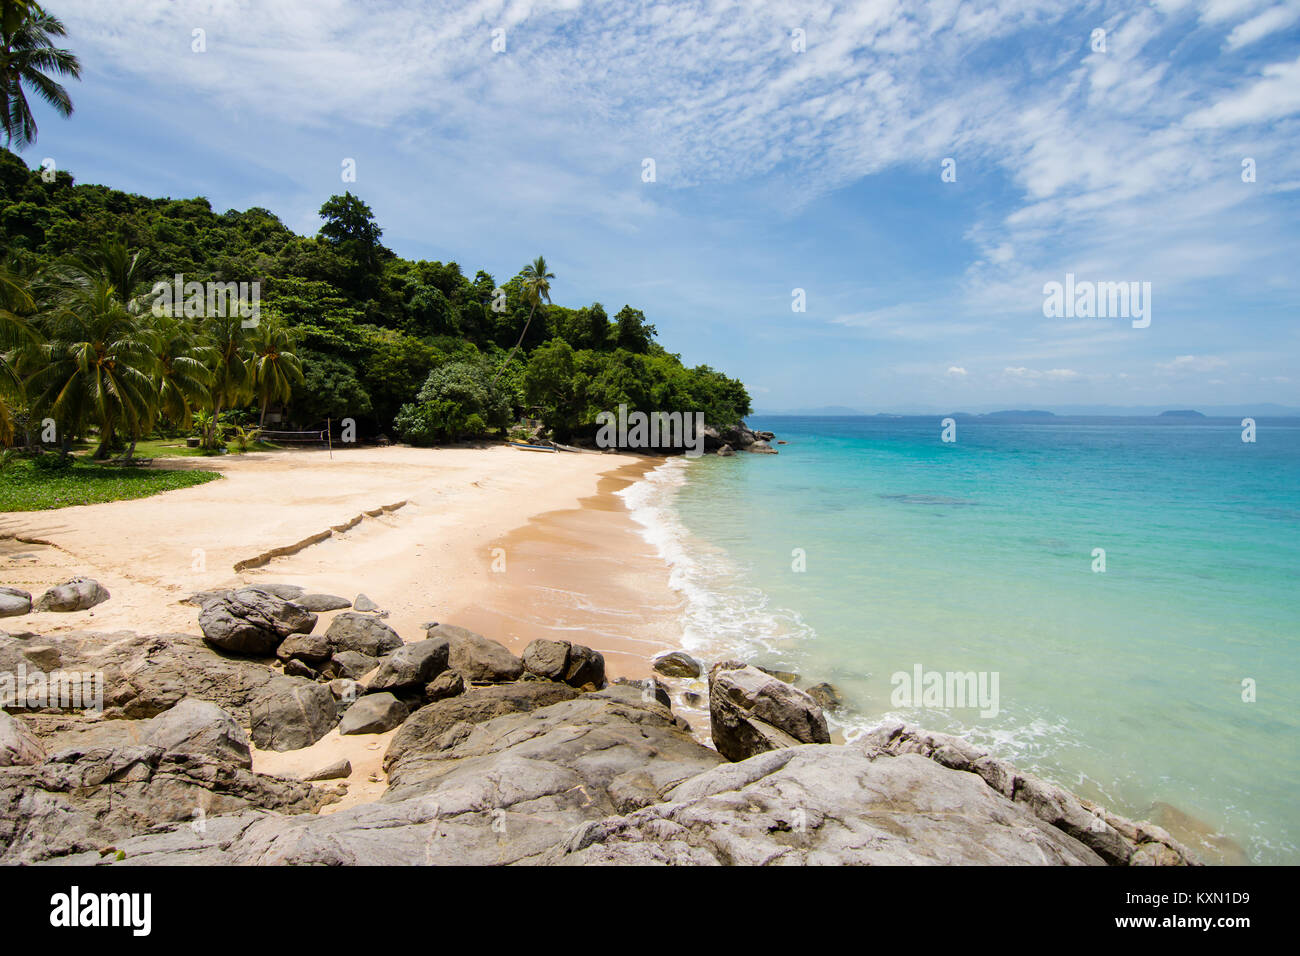 Des vagues de lumière turquoise idilic mer rencontre petit abri de plage de sable doré sur une île paradisiaque. îles perhentian, Malaisie. Banque D'Images